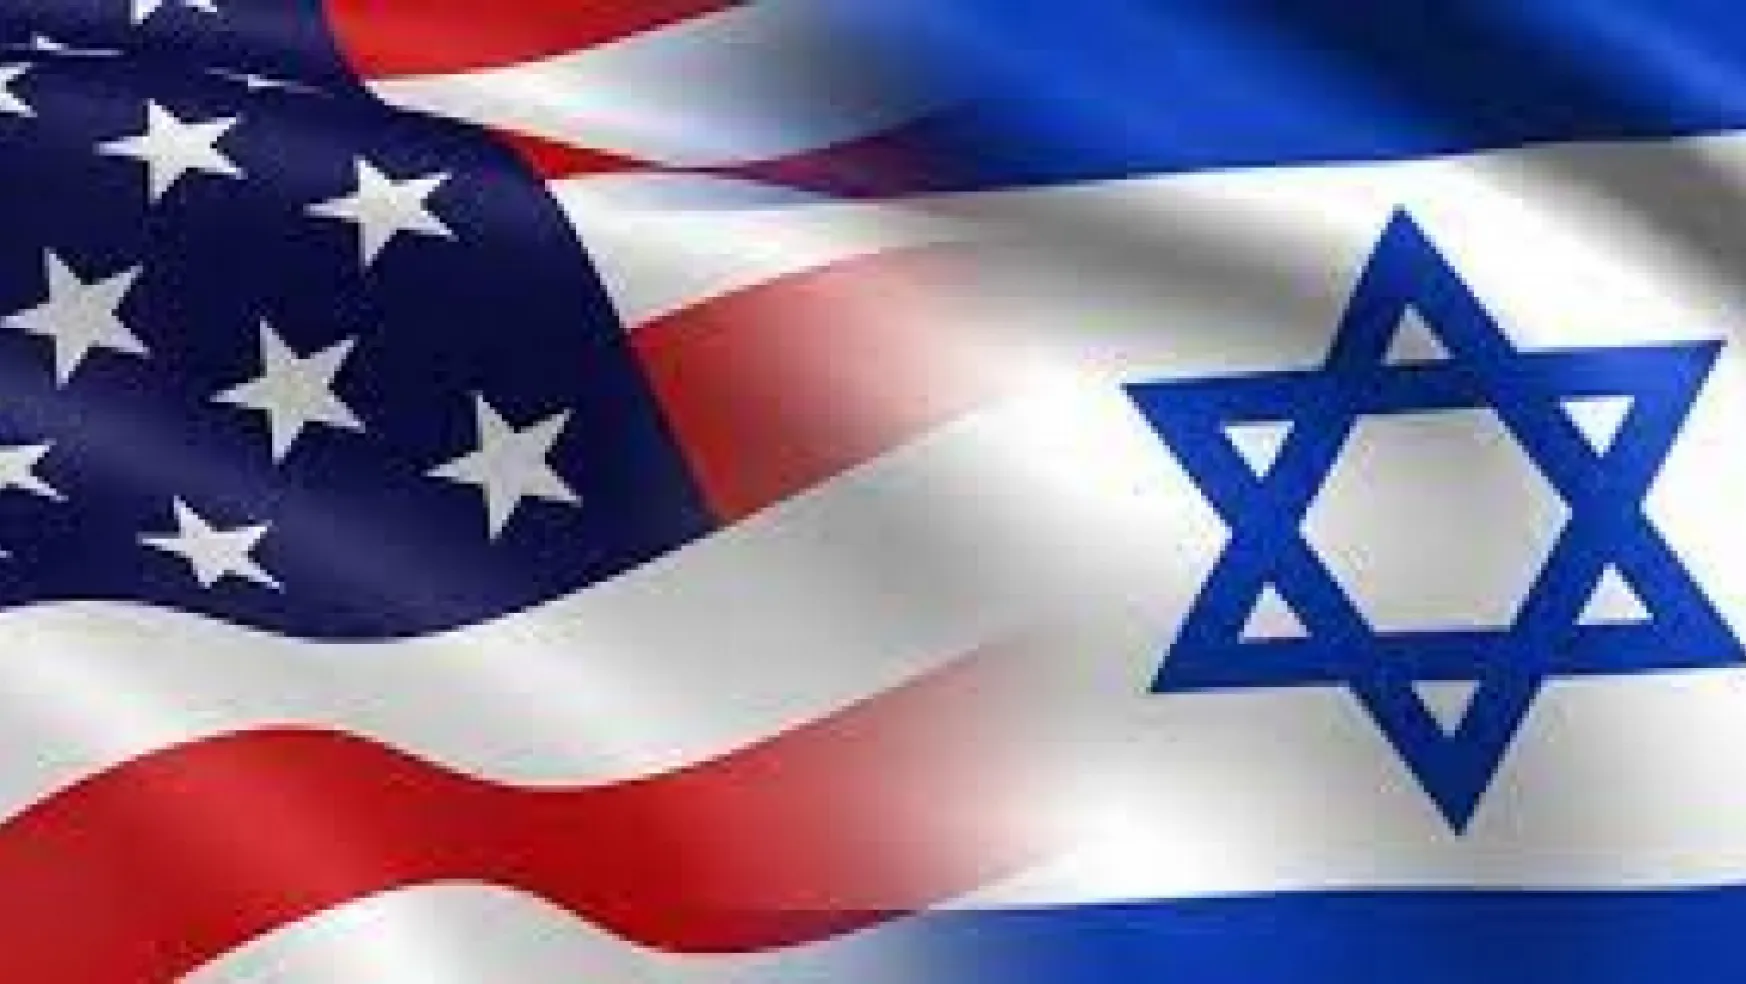 Dünyayı sarsan büyük iddia: İsrail, ABD seçimlerine müdahale mi etti?